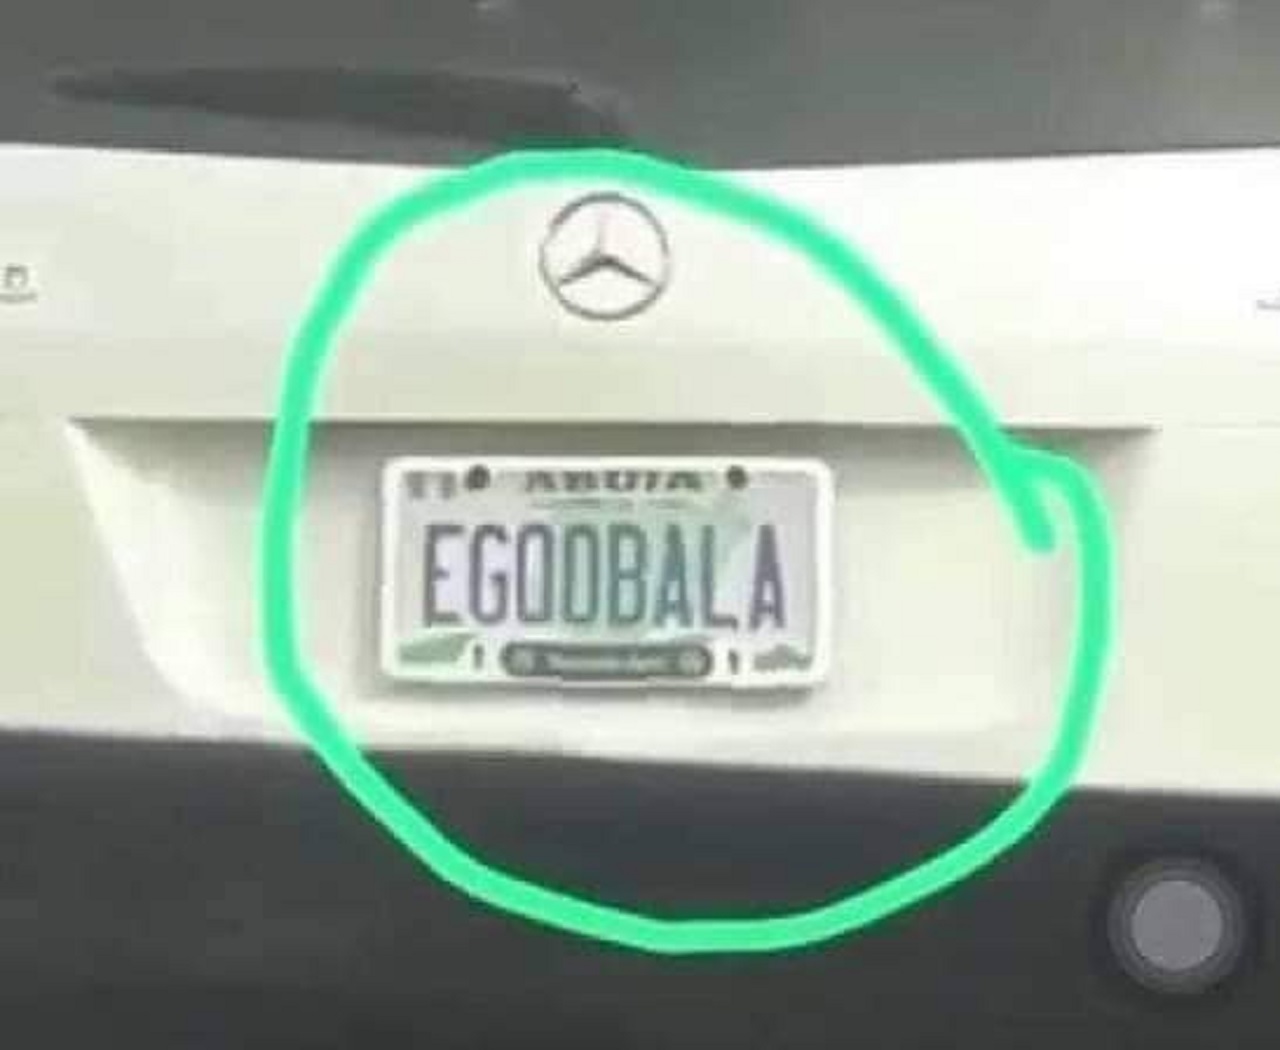 Egoobala